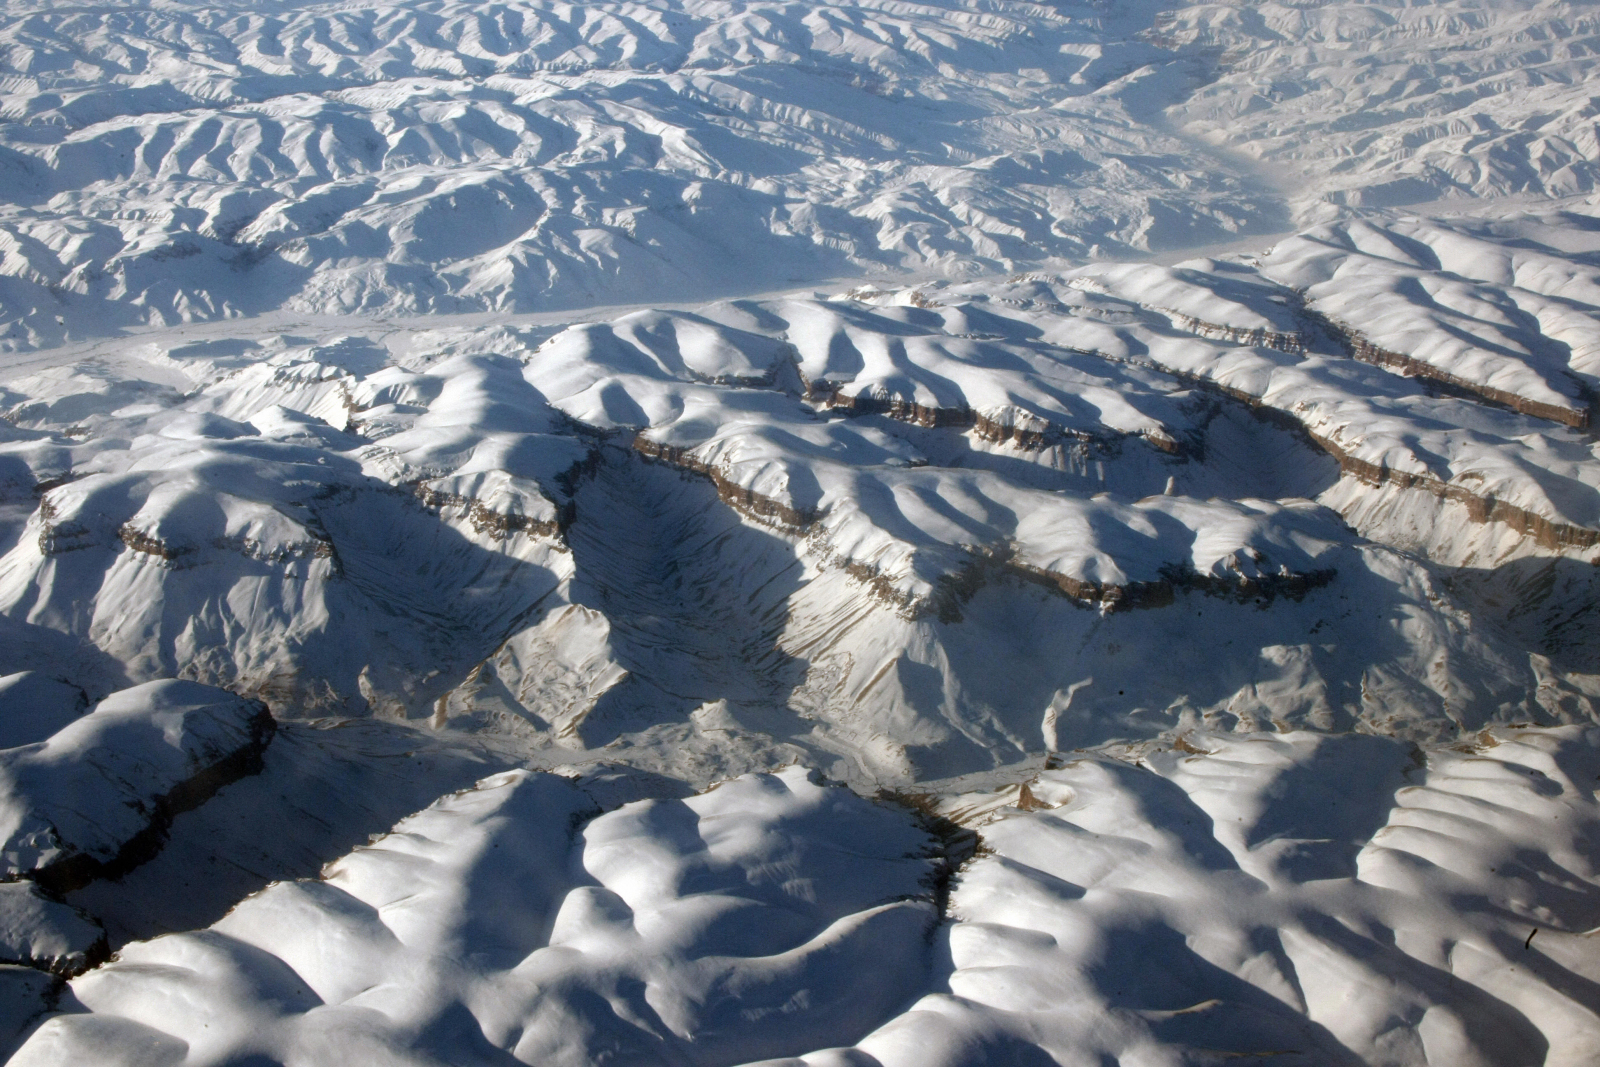 Les glaciers de l’Himalaya pourraient perdre jusqu’à 80 % de leur glace à cause du réchauffement climatique : rapport